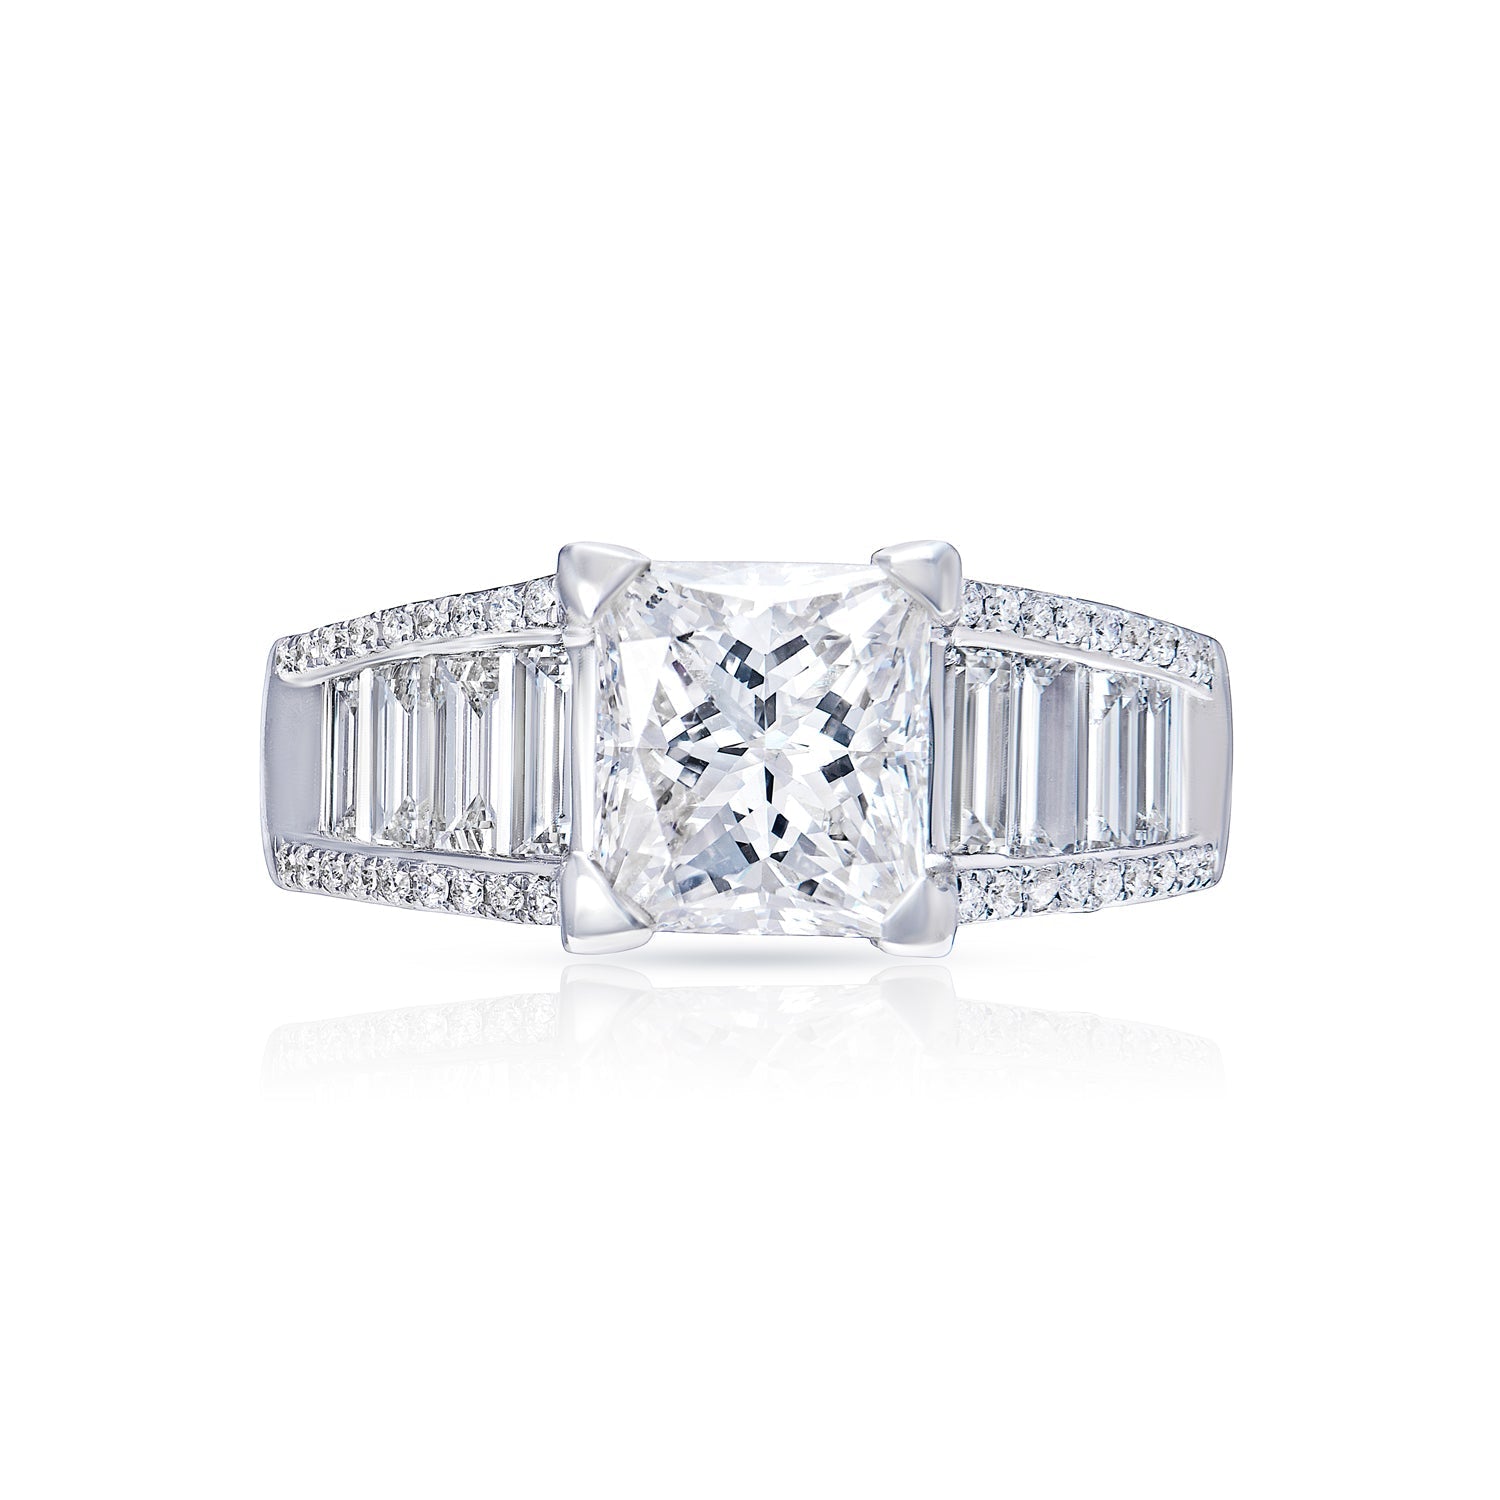 Macie 3 Carat G VS2 Princess Cut Diamond Engagement Ring in 18 Karat White Gold Front View